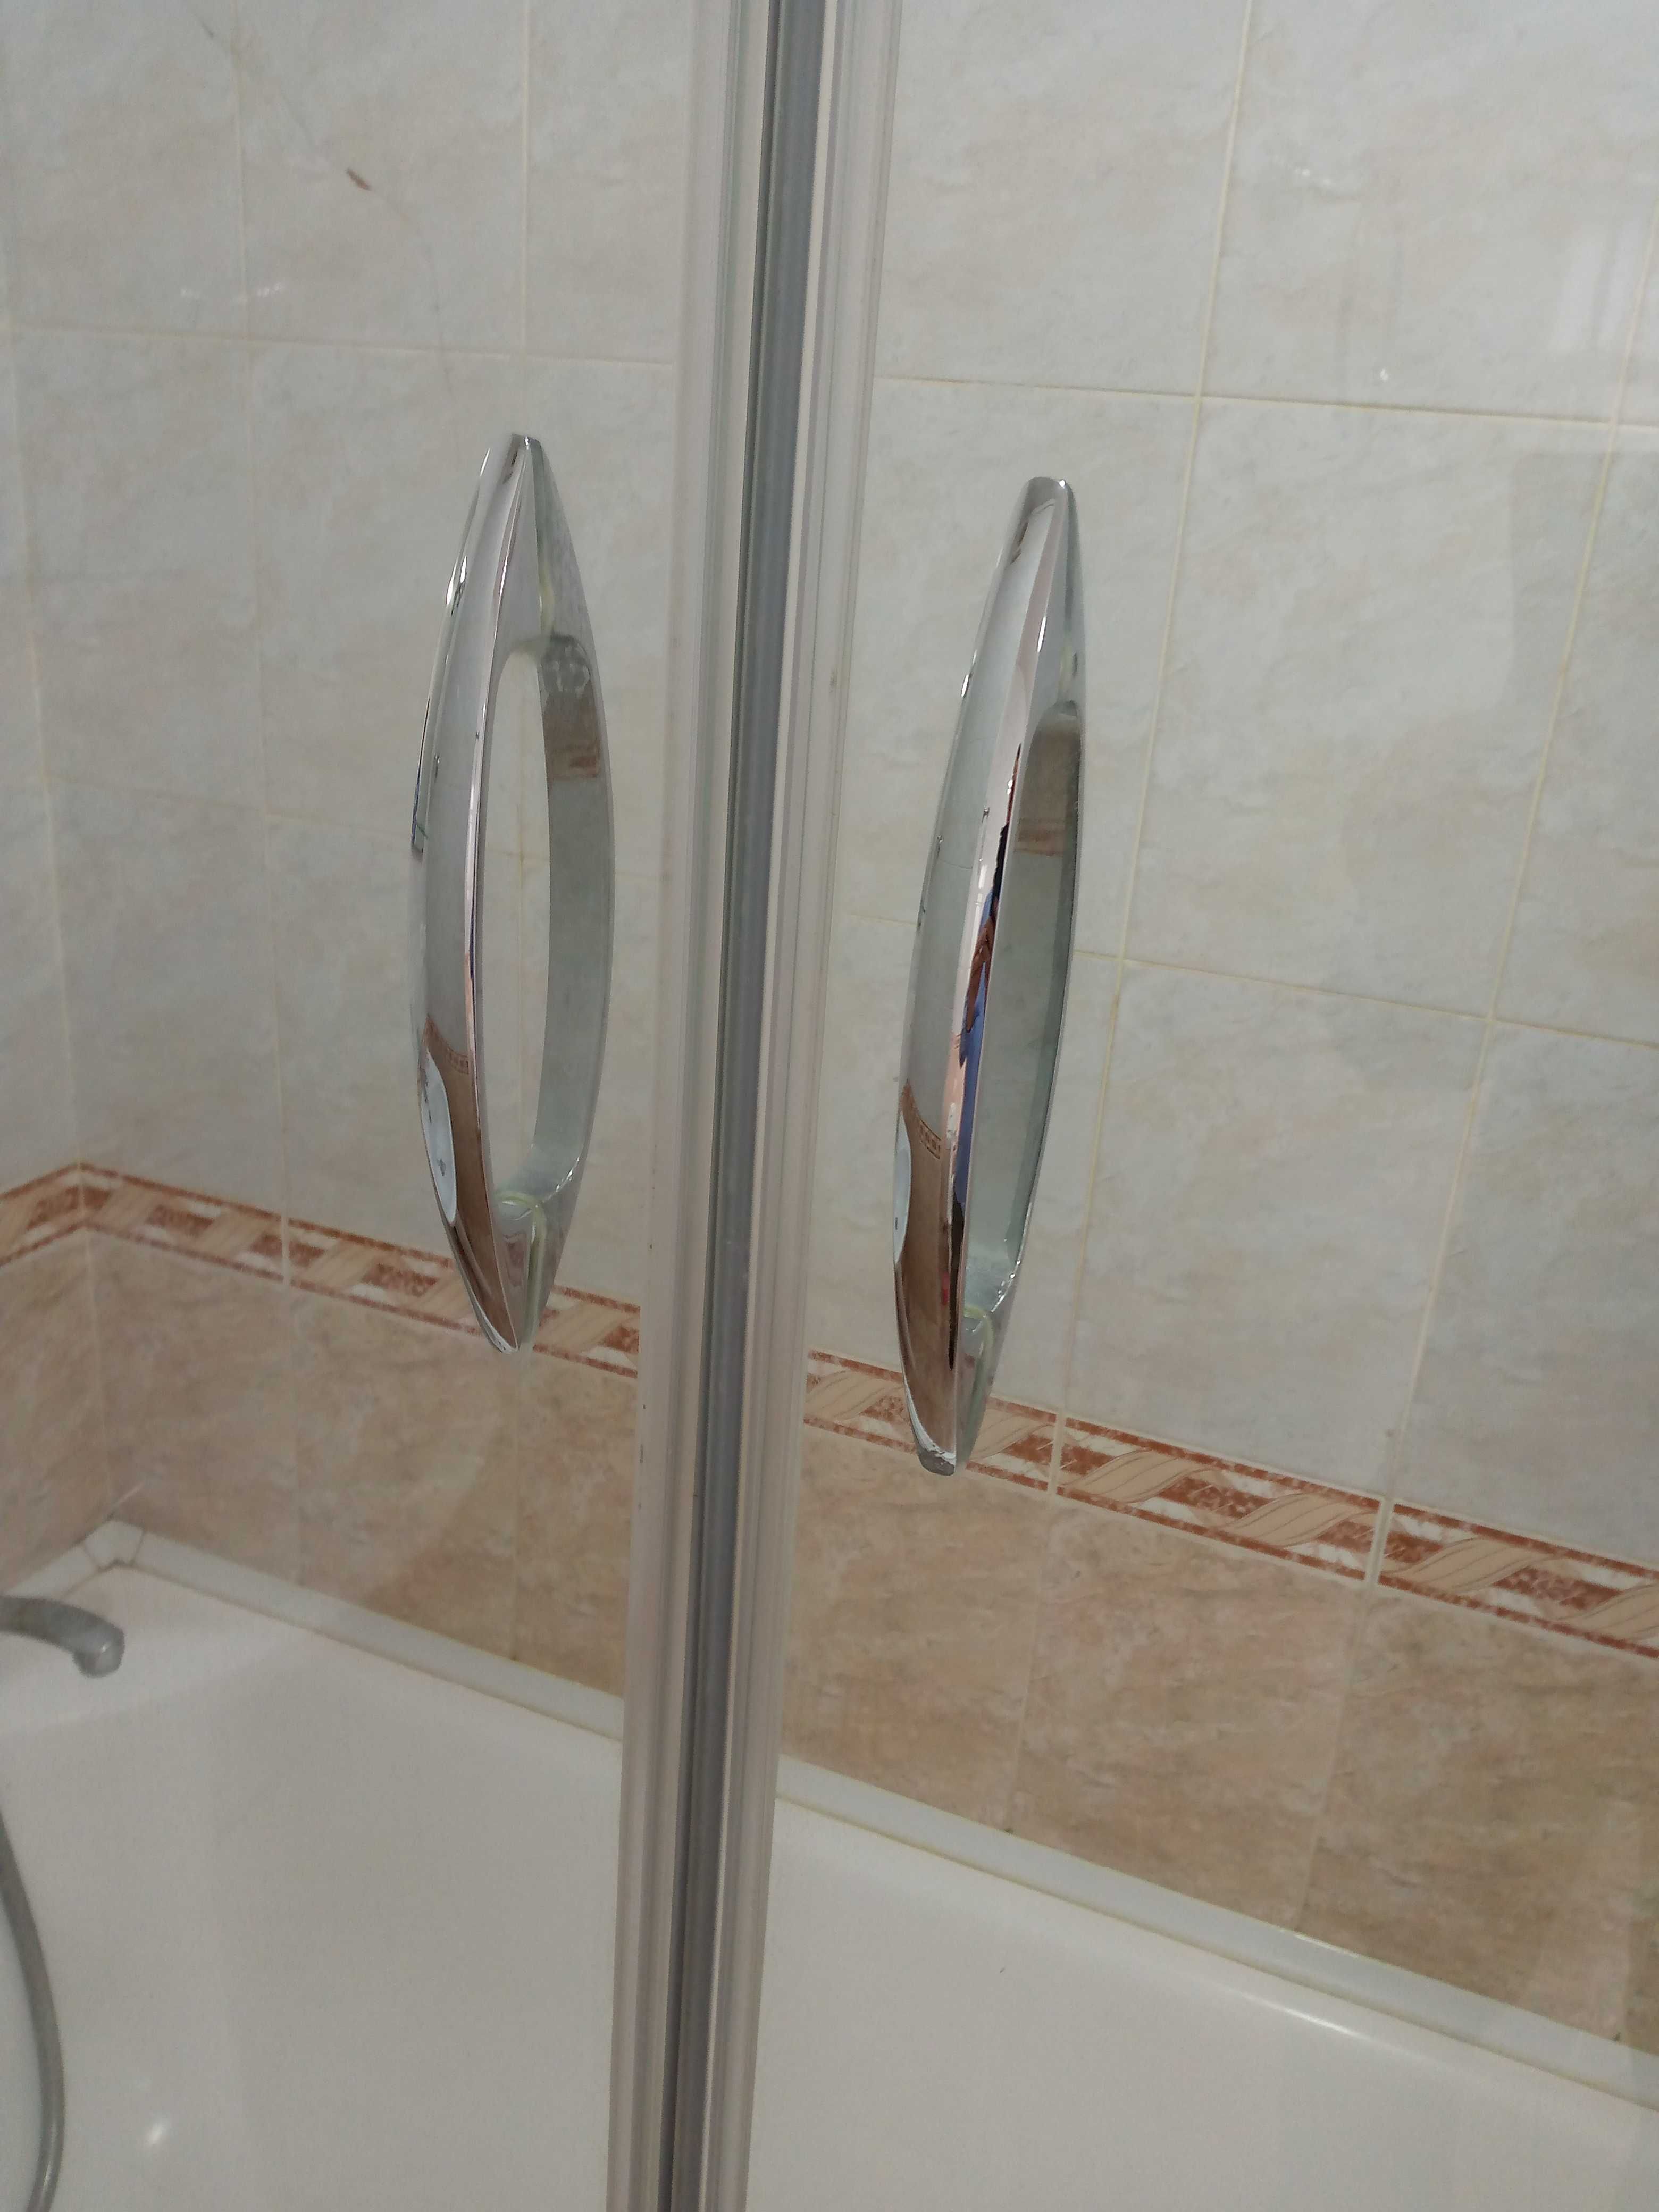 Роликовая стеклянная перегородка для ванны.Ширина 168см, выс 160см